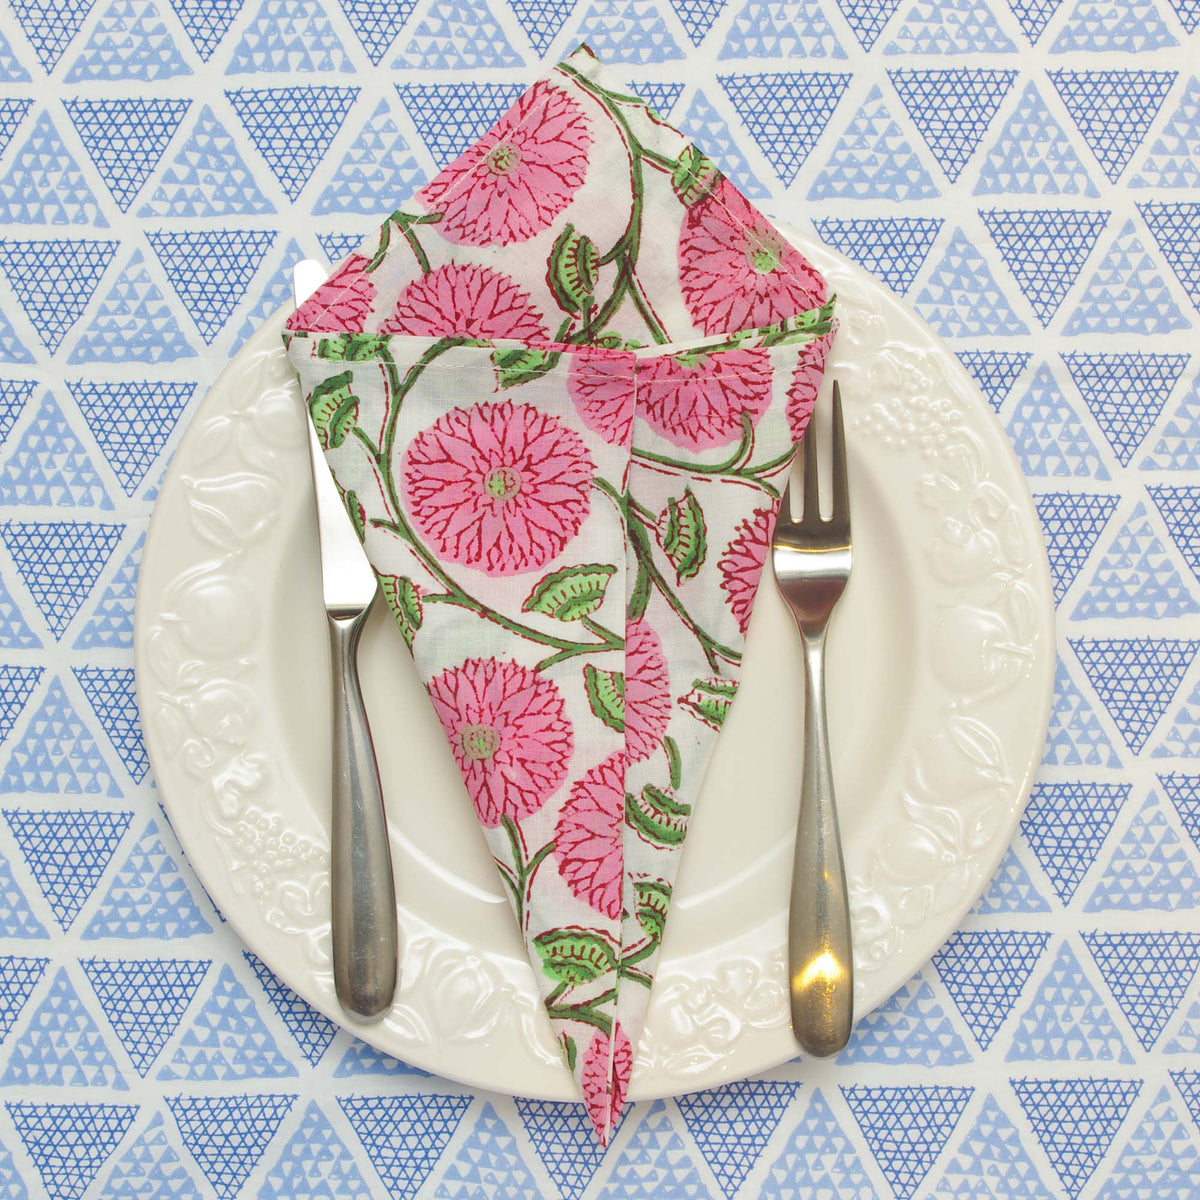 Pink Floral Block Printed Dinner Napkins (16''/18''/20'') - Set of 4